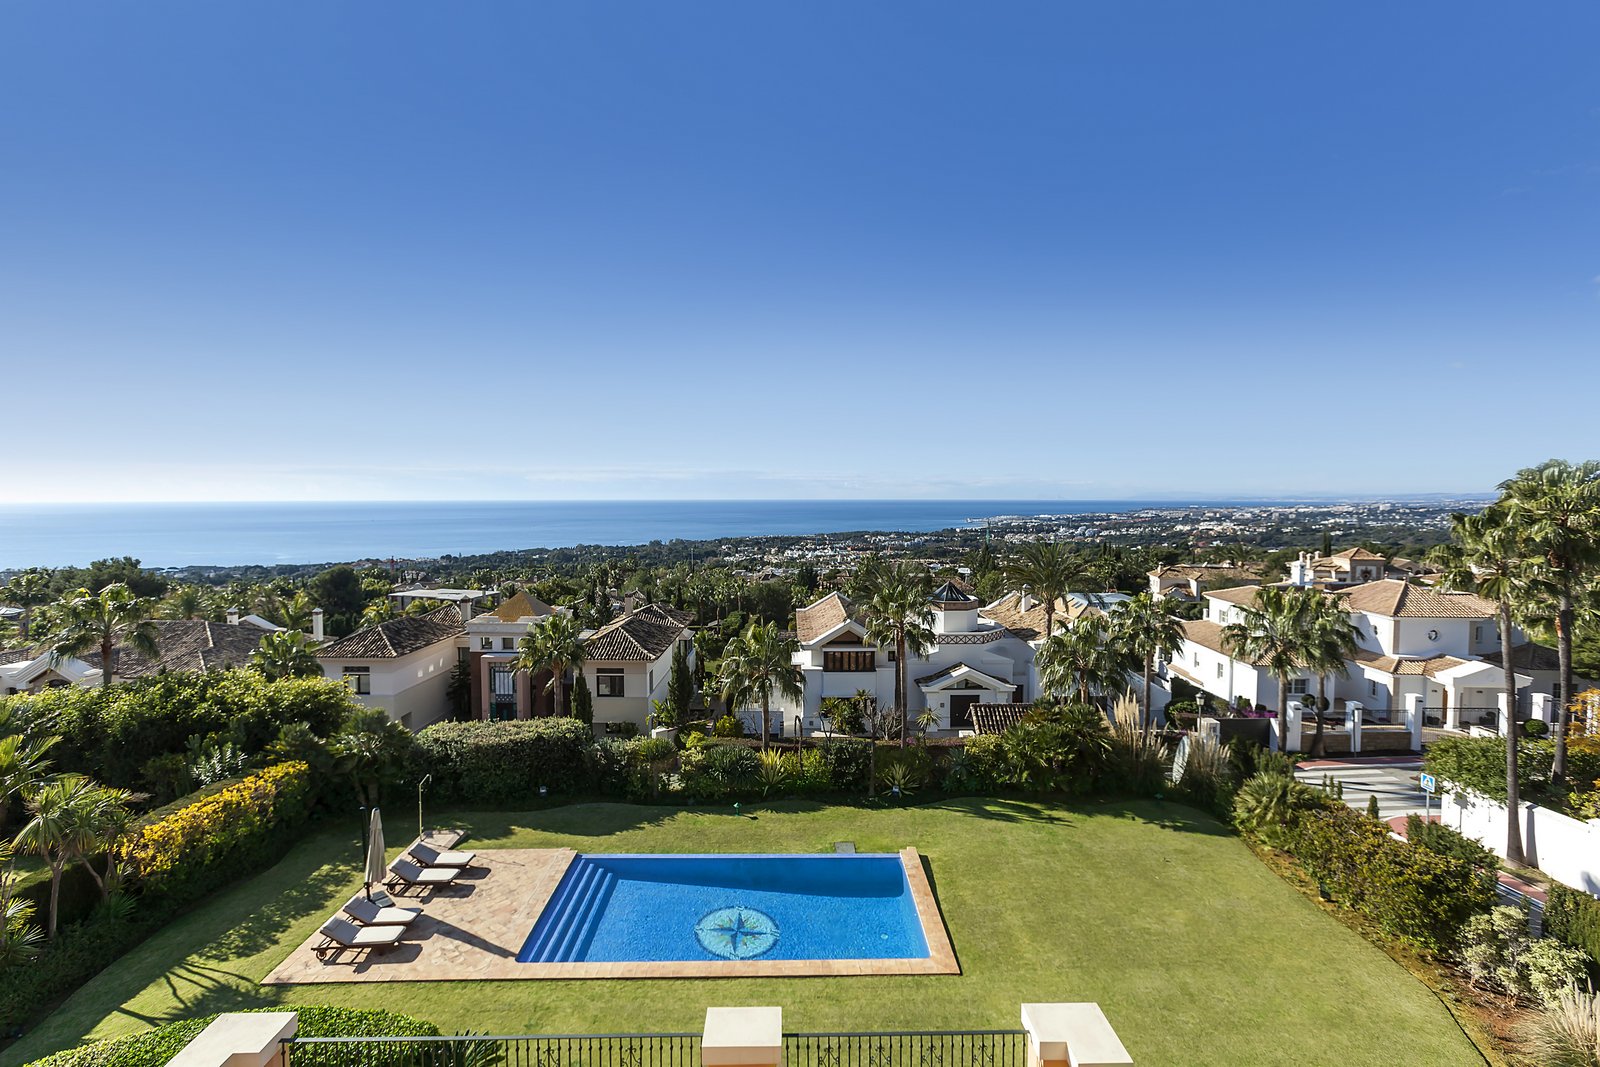 Die ausländischen Immobilienköufer kehren nach Marbella zurück